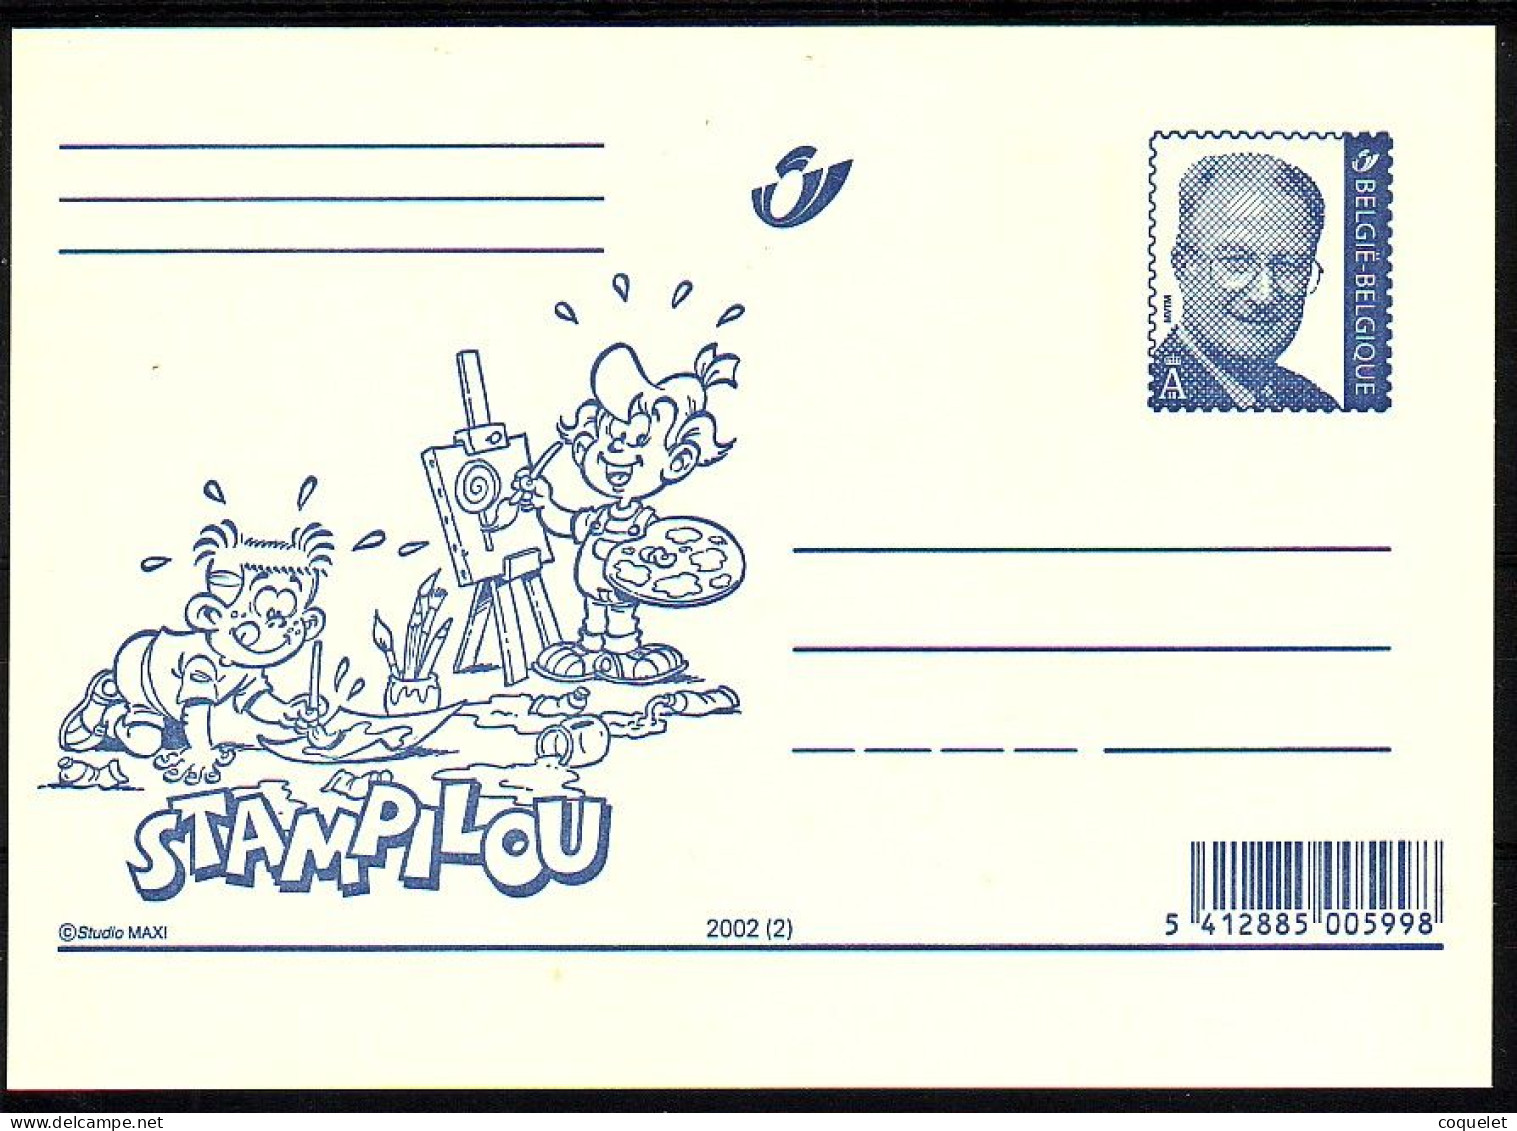 Belgique - Entiers Postaux - Cartes Illustrées N° 82 # STAMPILOU  2 - Fumetti